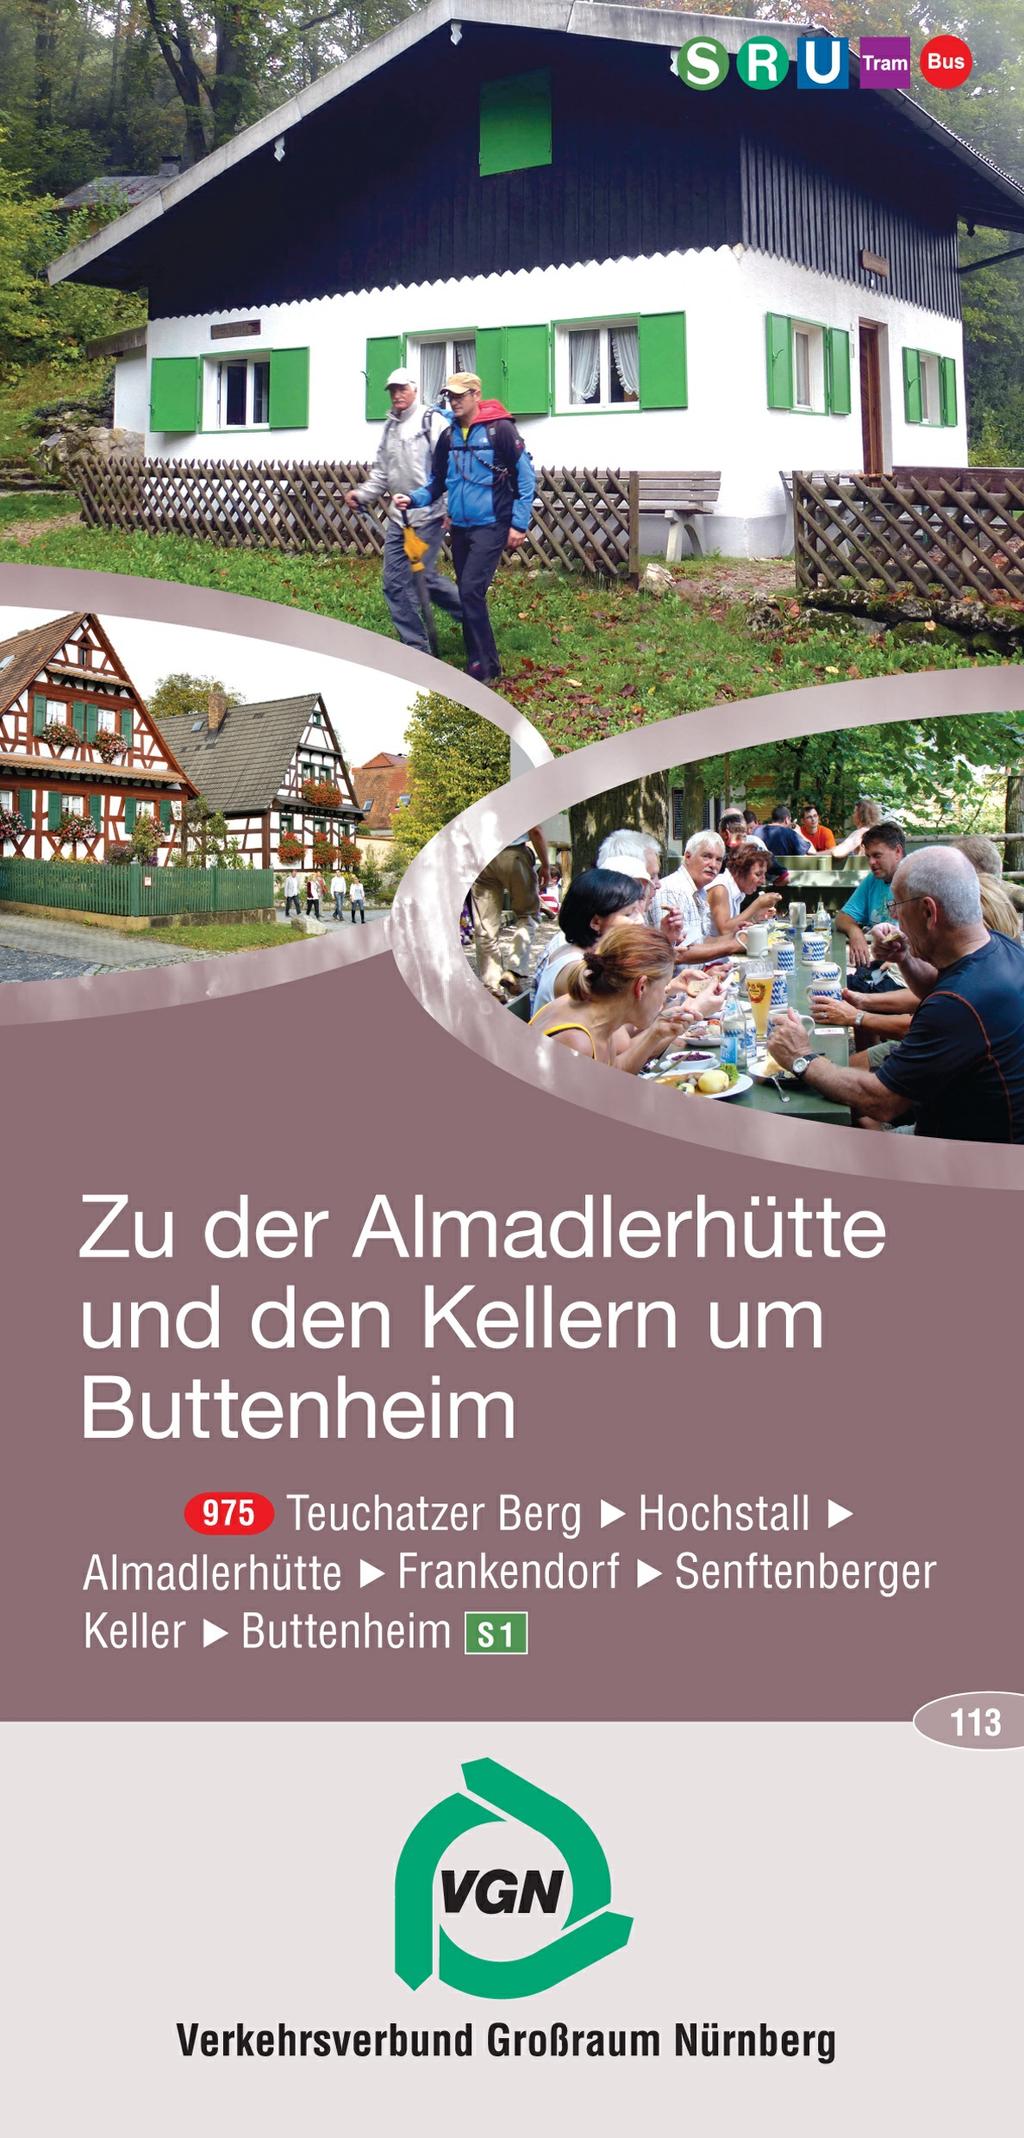 Zur Almadlerhütte und den Kellern um Buttenheim Entfernung: ca. 16,9 km, Dauer: ca. 4,5 Std.